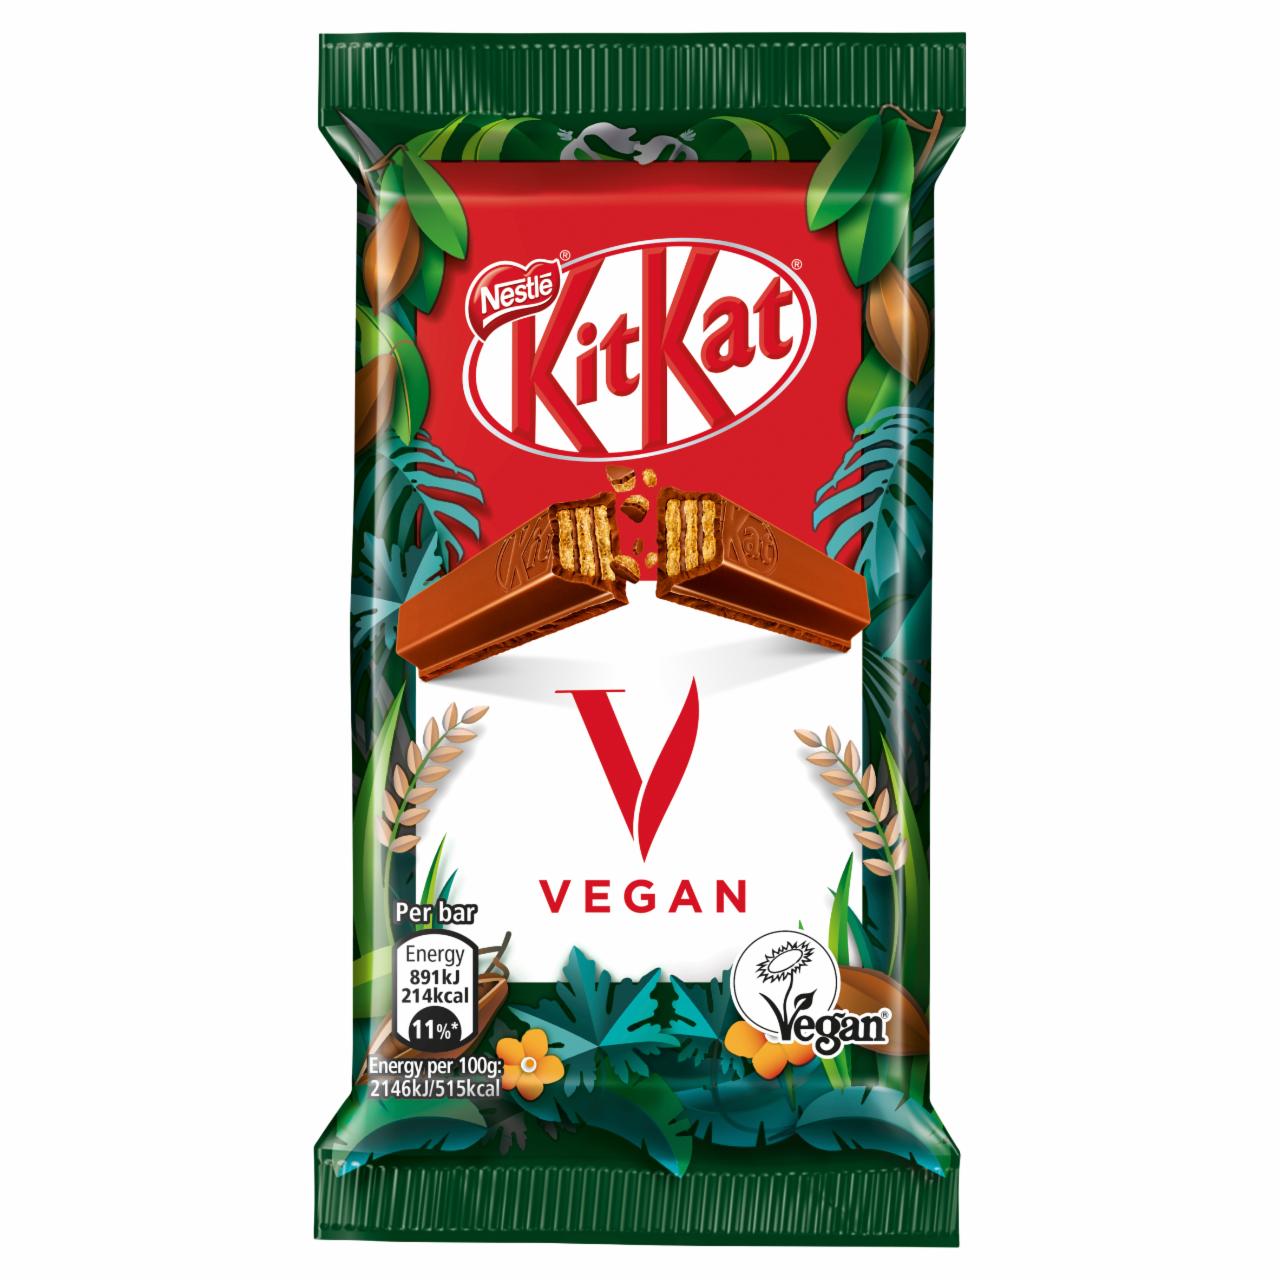 Képek - KitKat ropogós ostya mártócsokoládéban 41,5 g